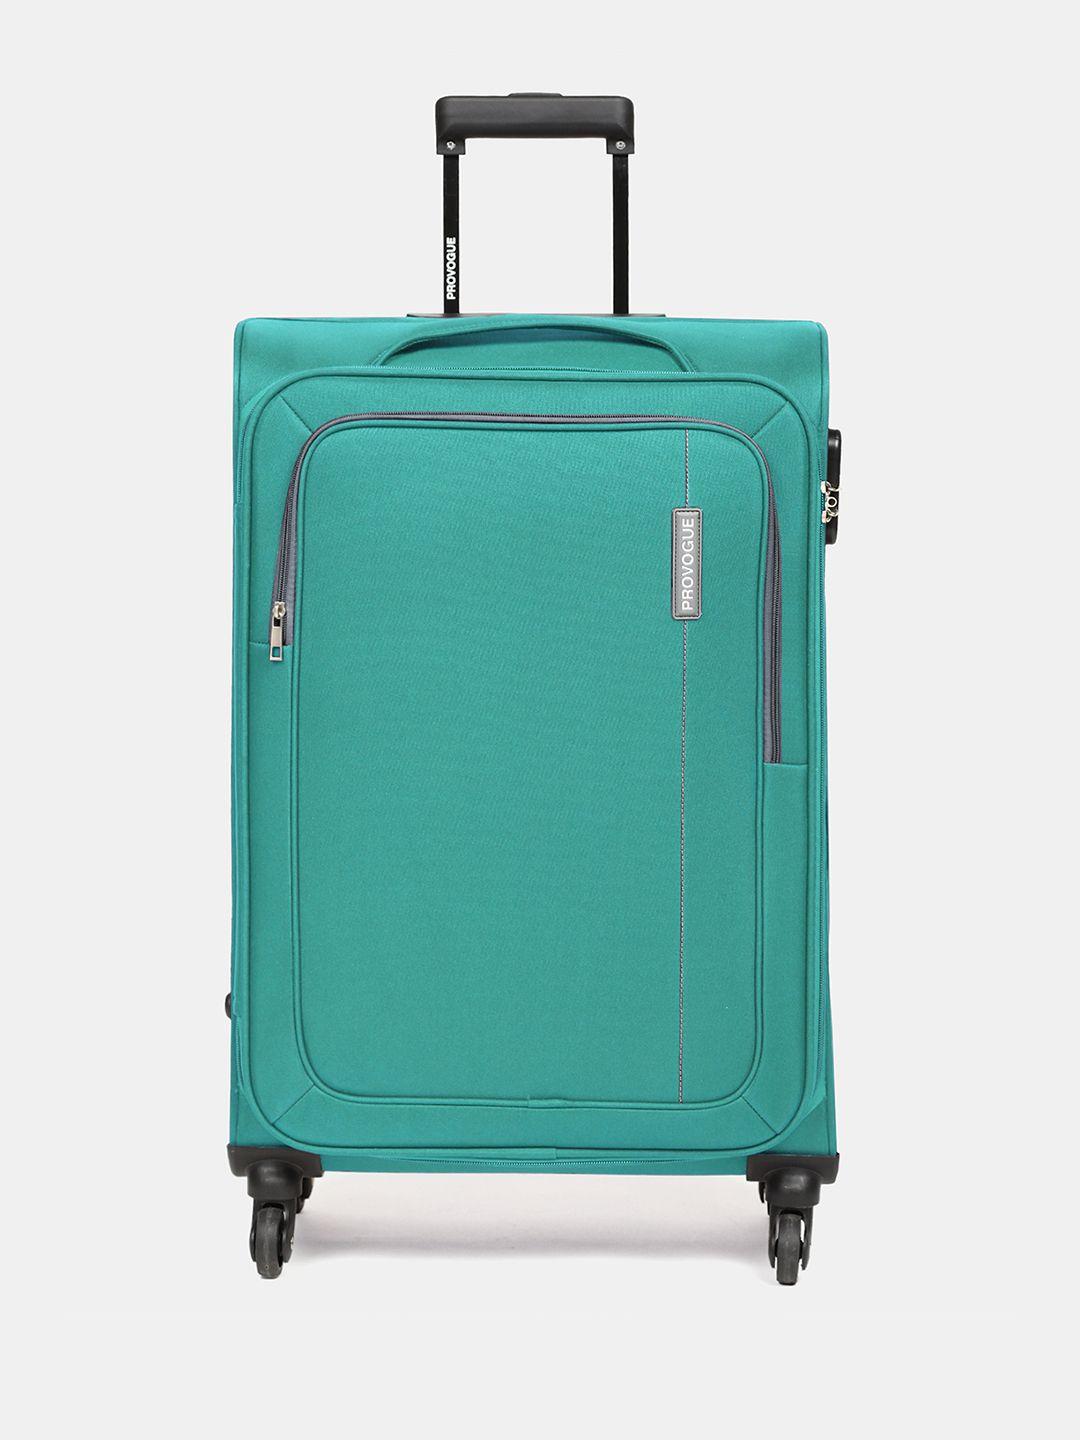 provogue lead medium trolley suitcase